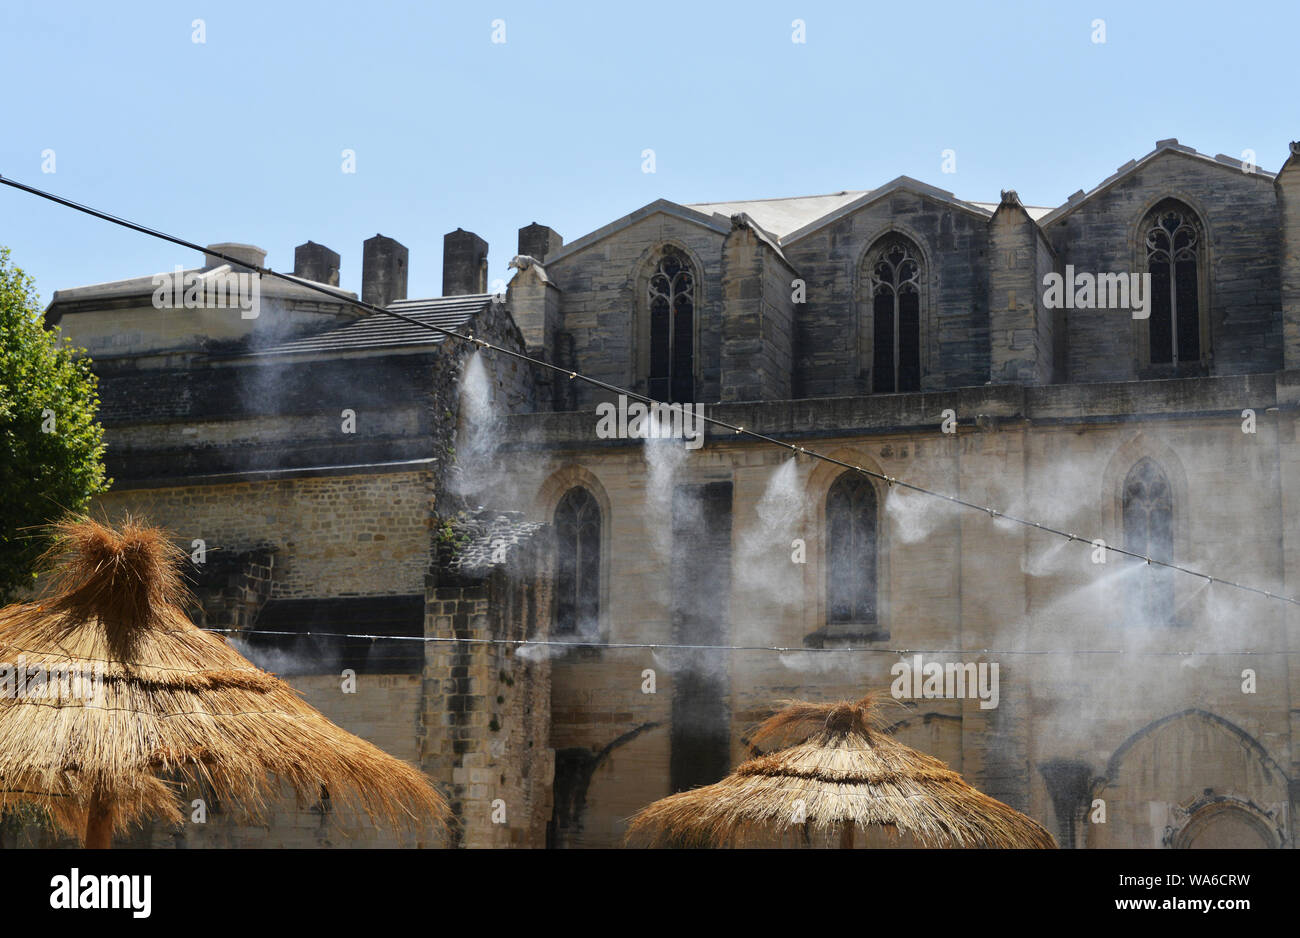 La humidificación del aire en el mercado durante el mediodía en Carpentras, Provenza, Francia Foto de stock